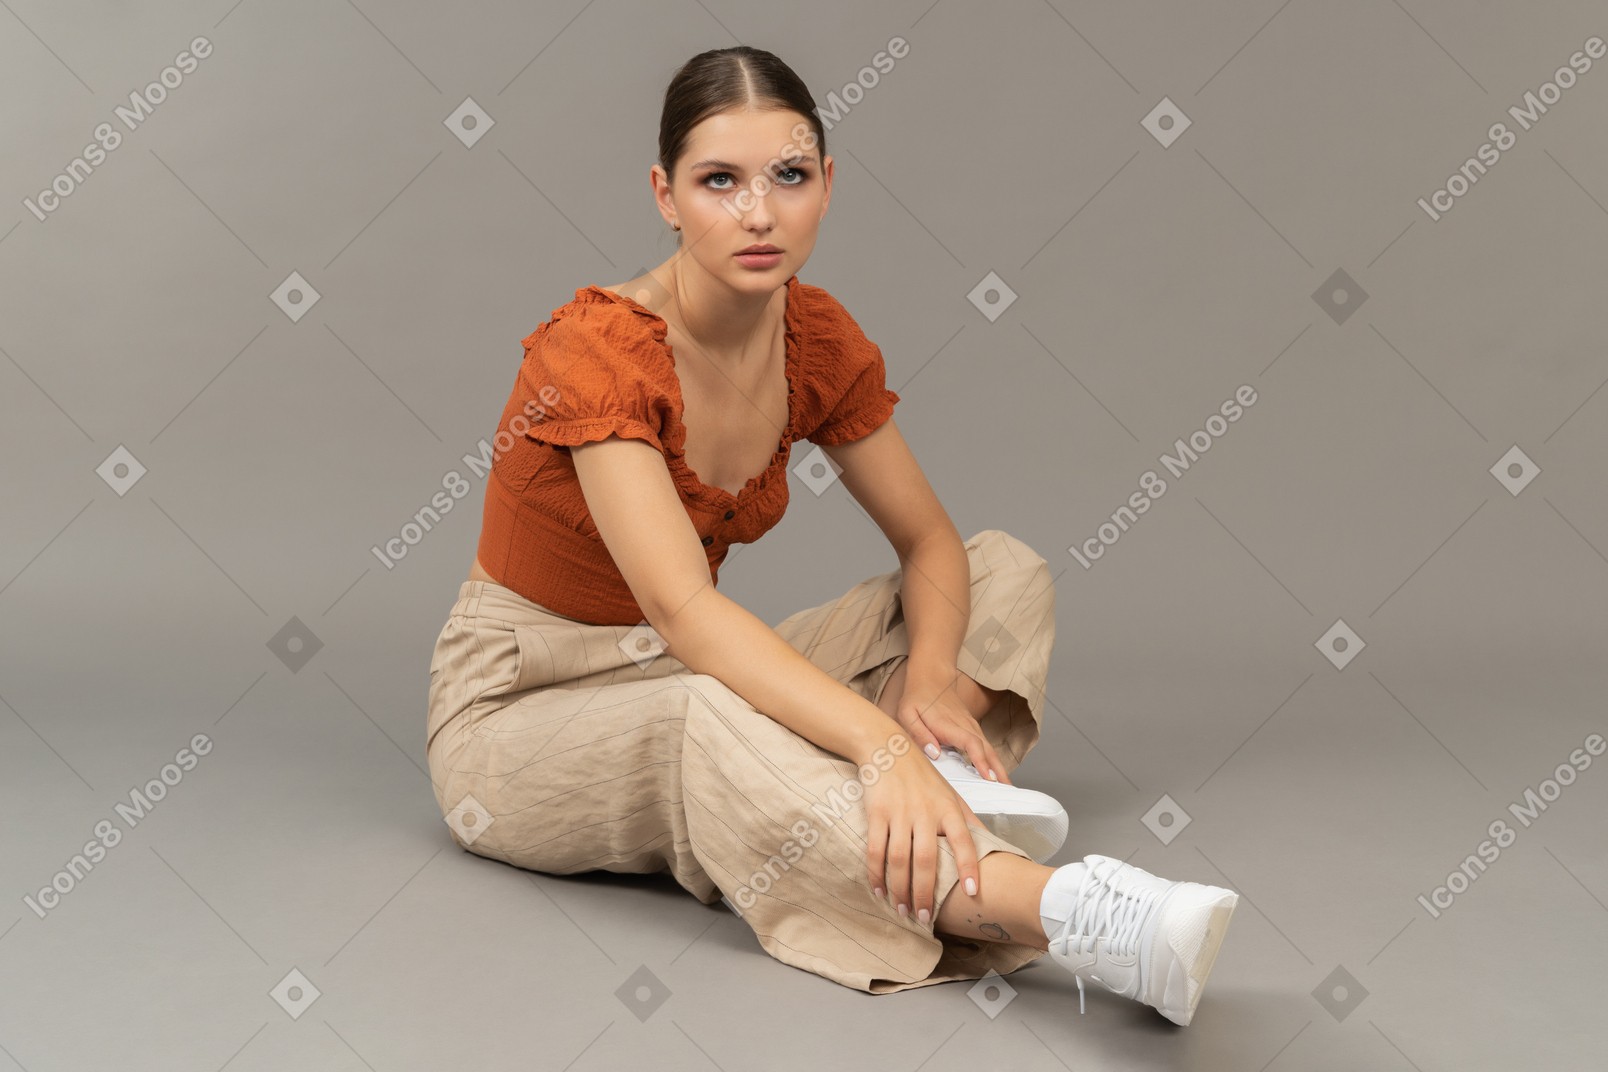 La giovane donna si siede sul pavimento